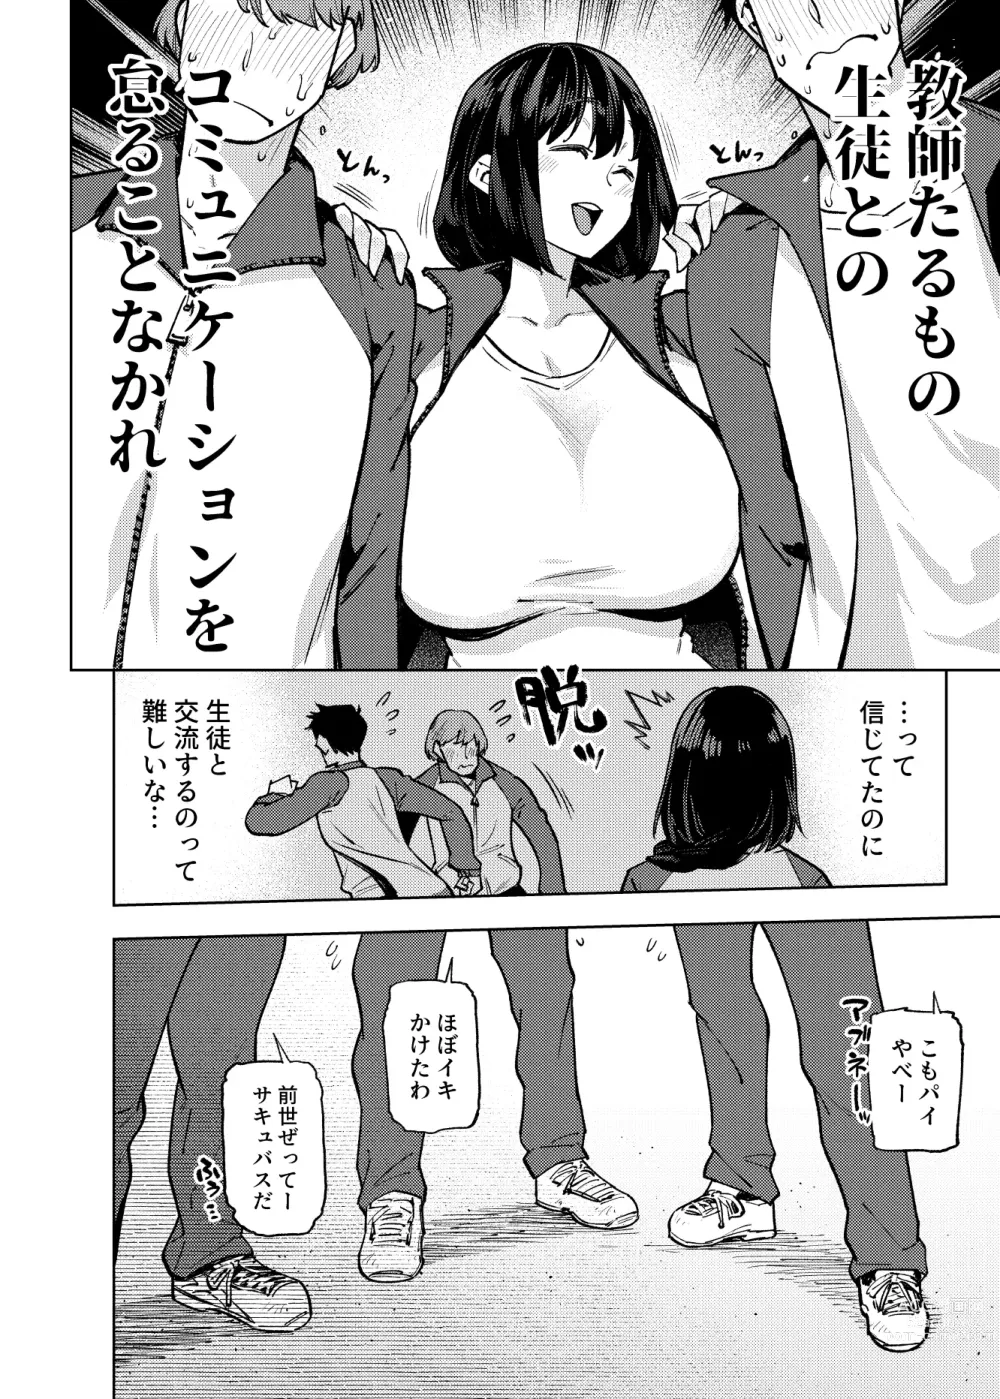 Page 11 of doujinshi Komori sensei wa komoranai